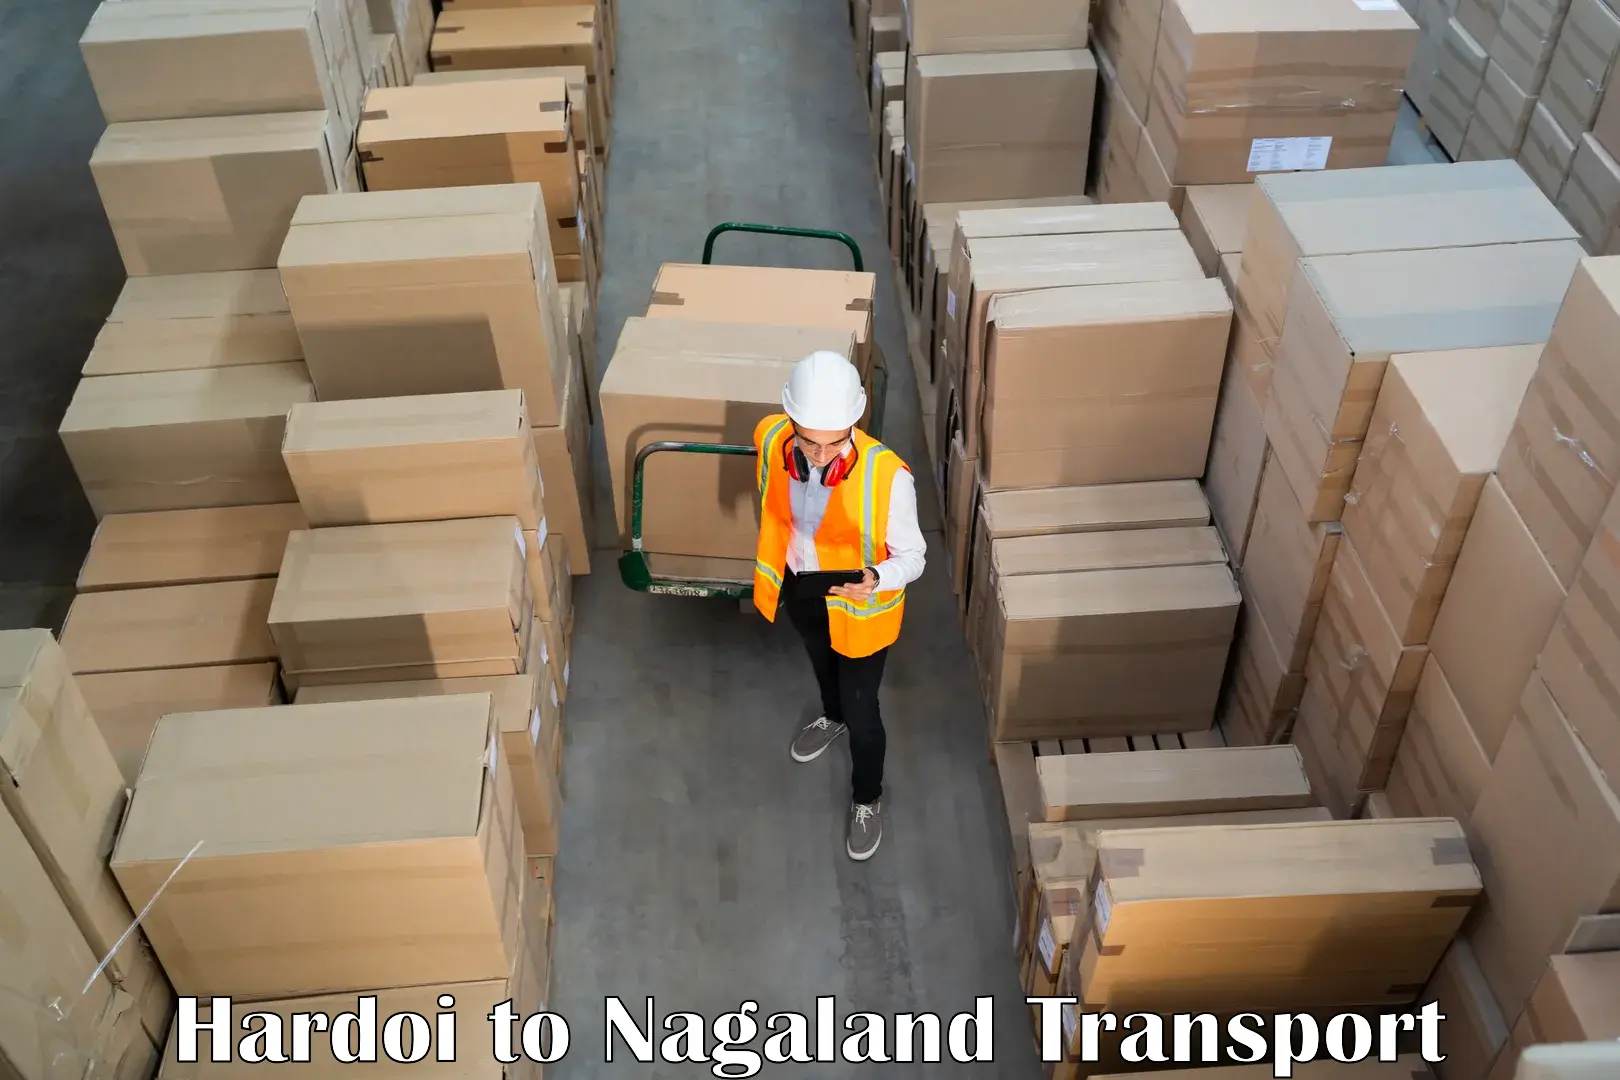 Furniture transport service Hardoi to Phek